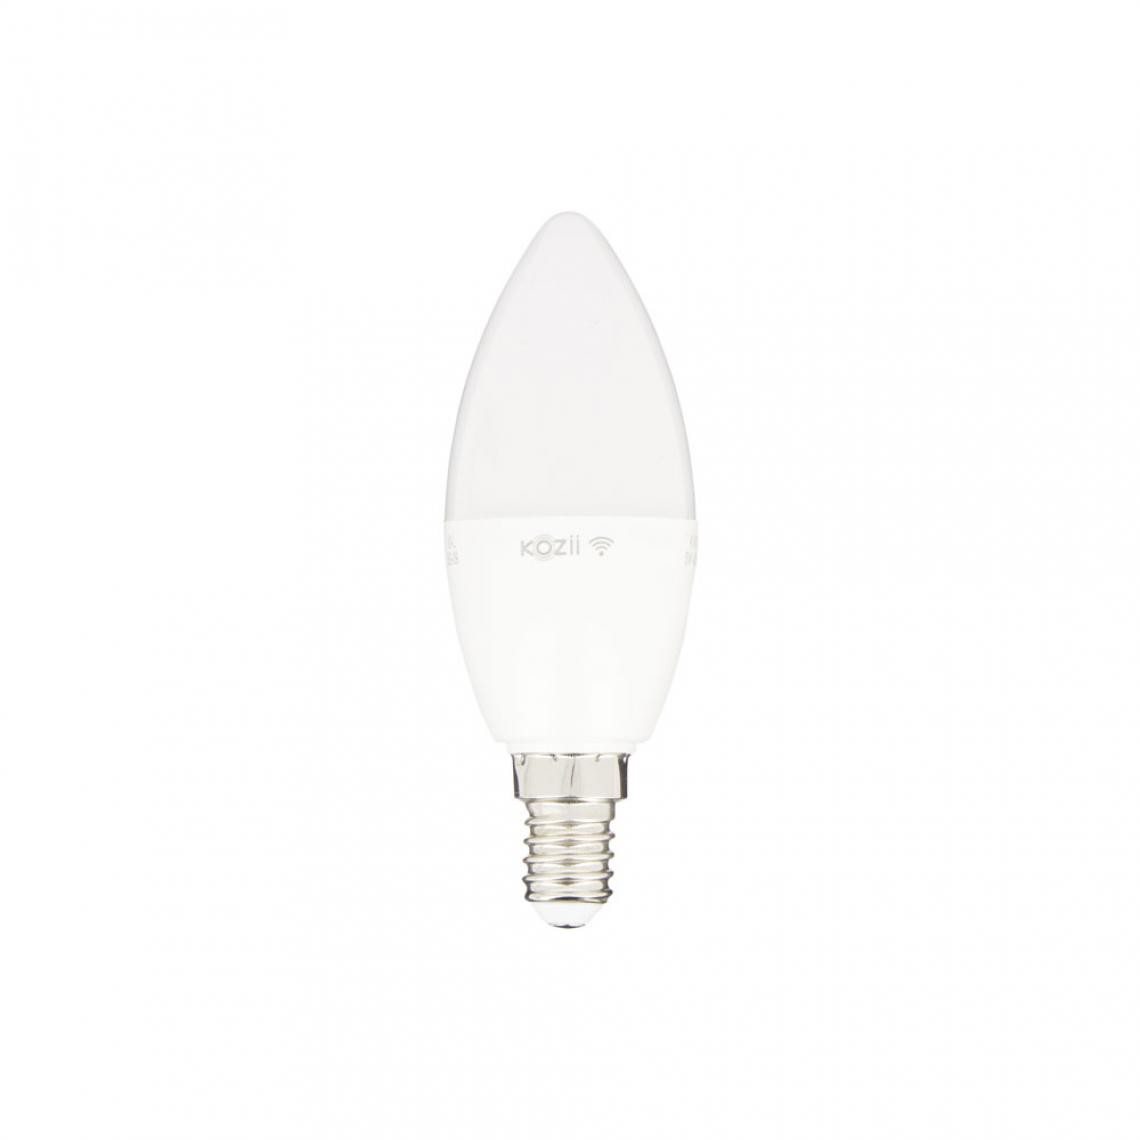 Xanlite - Ampoule LED connectée Kozii, flamme, culot E14, conso. 6W - Lampe connectée